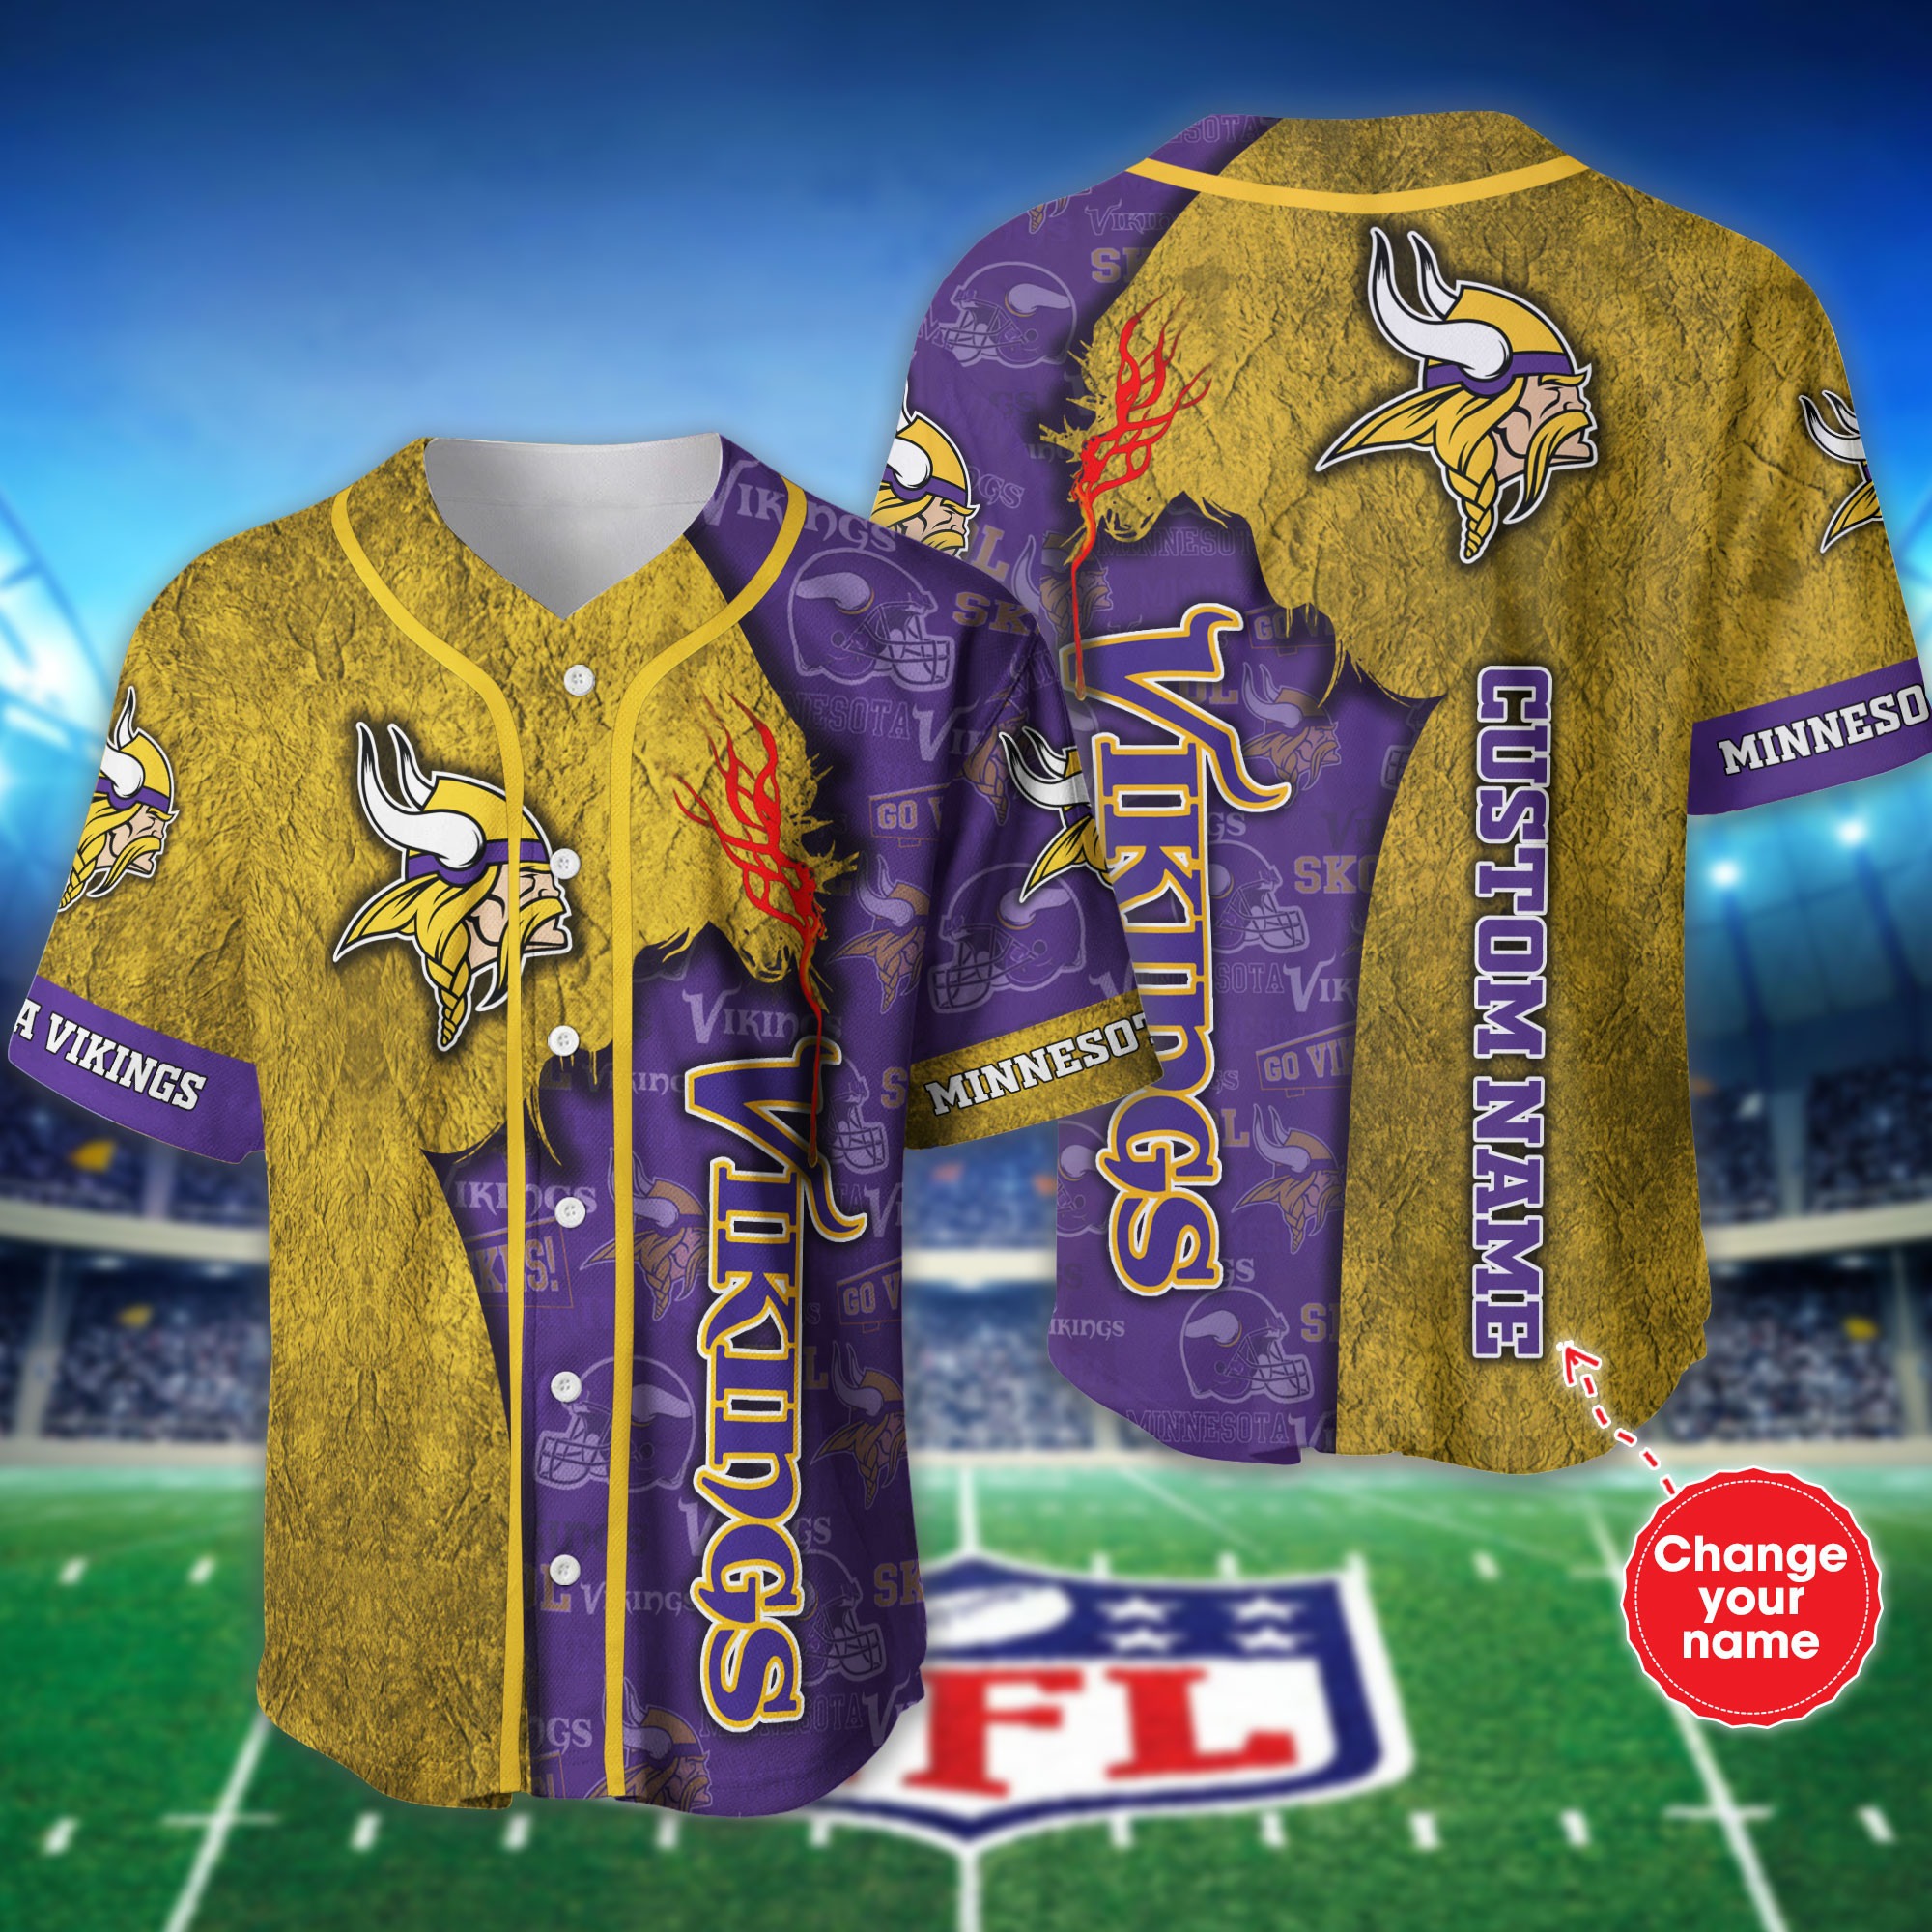 Personalized Minnesota Vikings Baseball Jersey shirt for fans